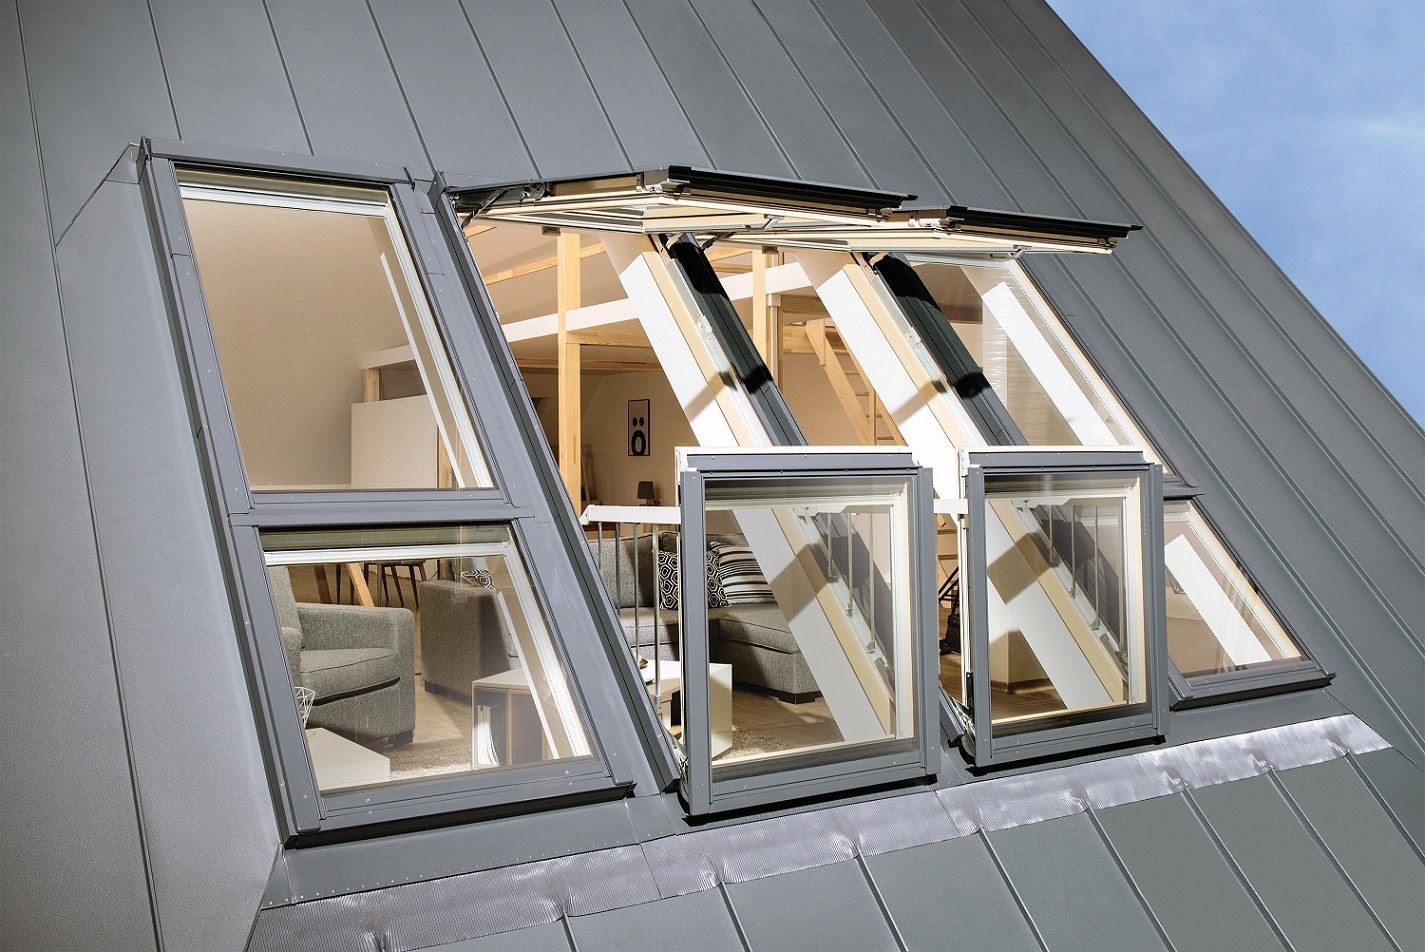 پنجره سقفی مجهز به سیستم اتوماتیک باز و بسته شدن در هوای معتدل